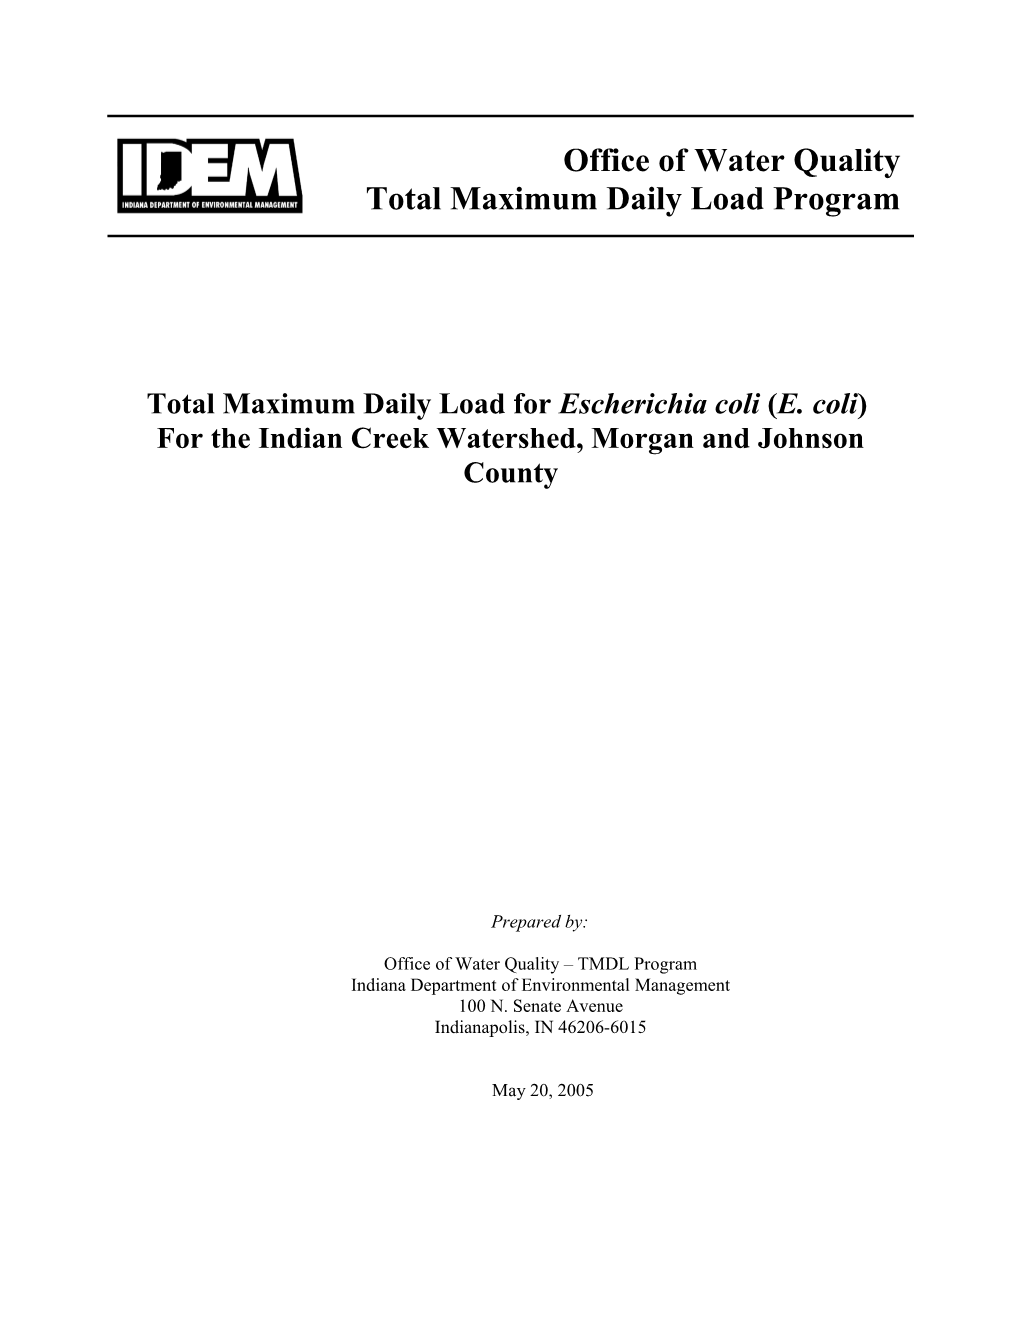 Total Maximum Daily Load for Escherichia Coli (E. Coli)